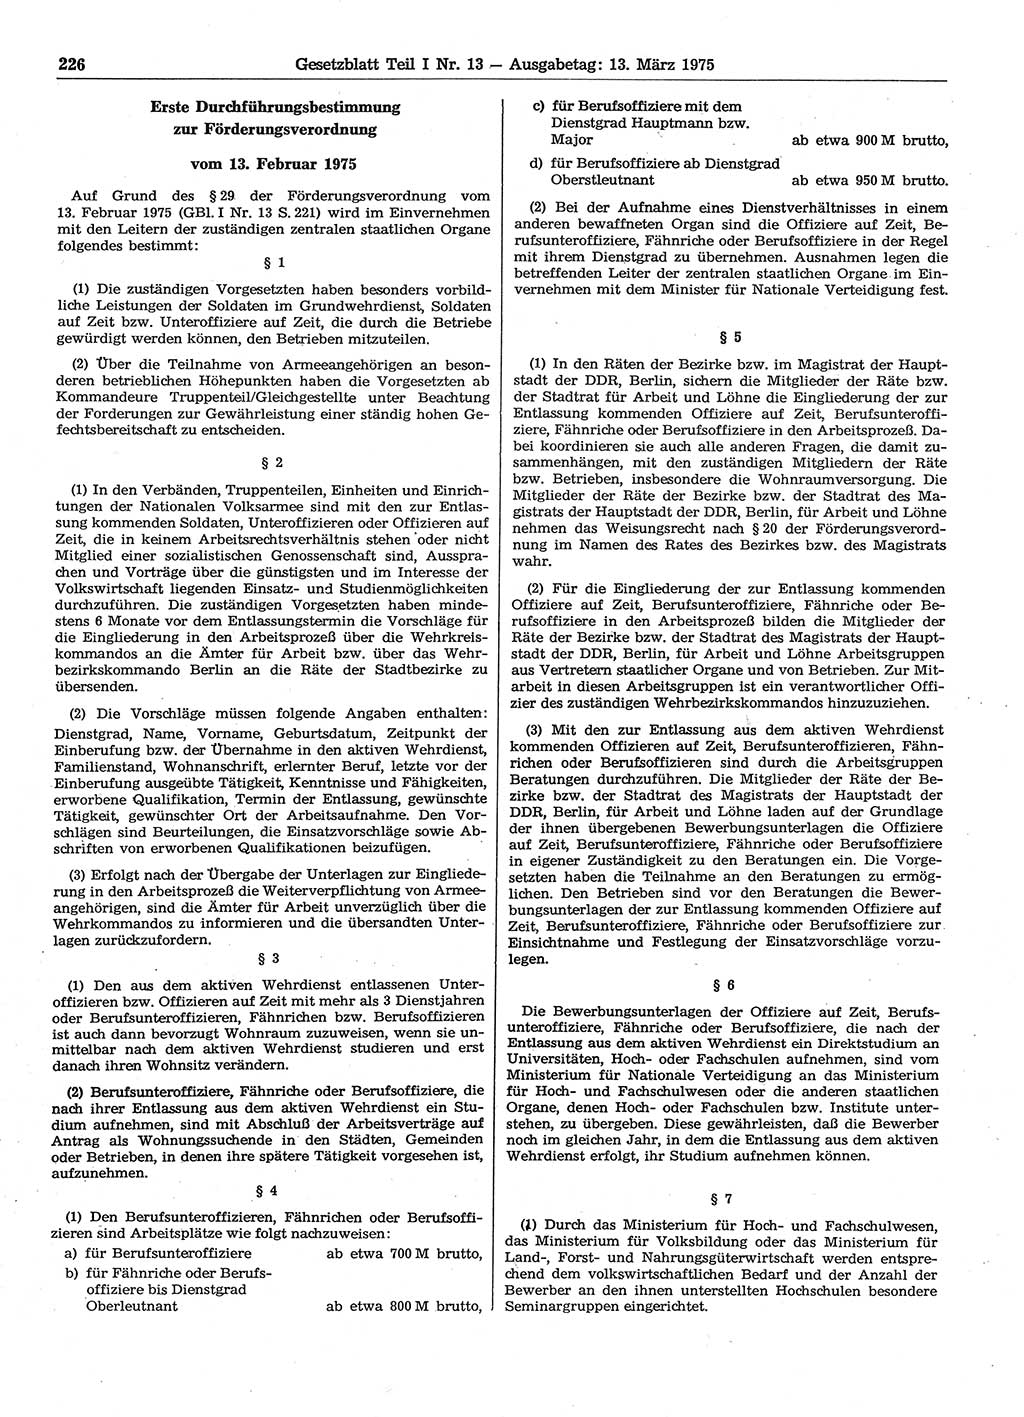 Gesetzblatt (GBl.) der Deutschen Demokratischen Republik (DDR) Teil Ⅰ 1975, Seite 226 (GBl. DDR Ⅰ 1975, S. 226)